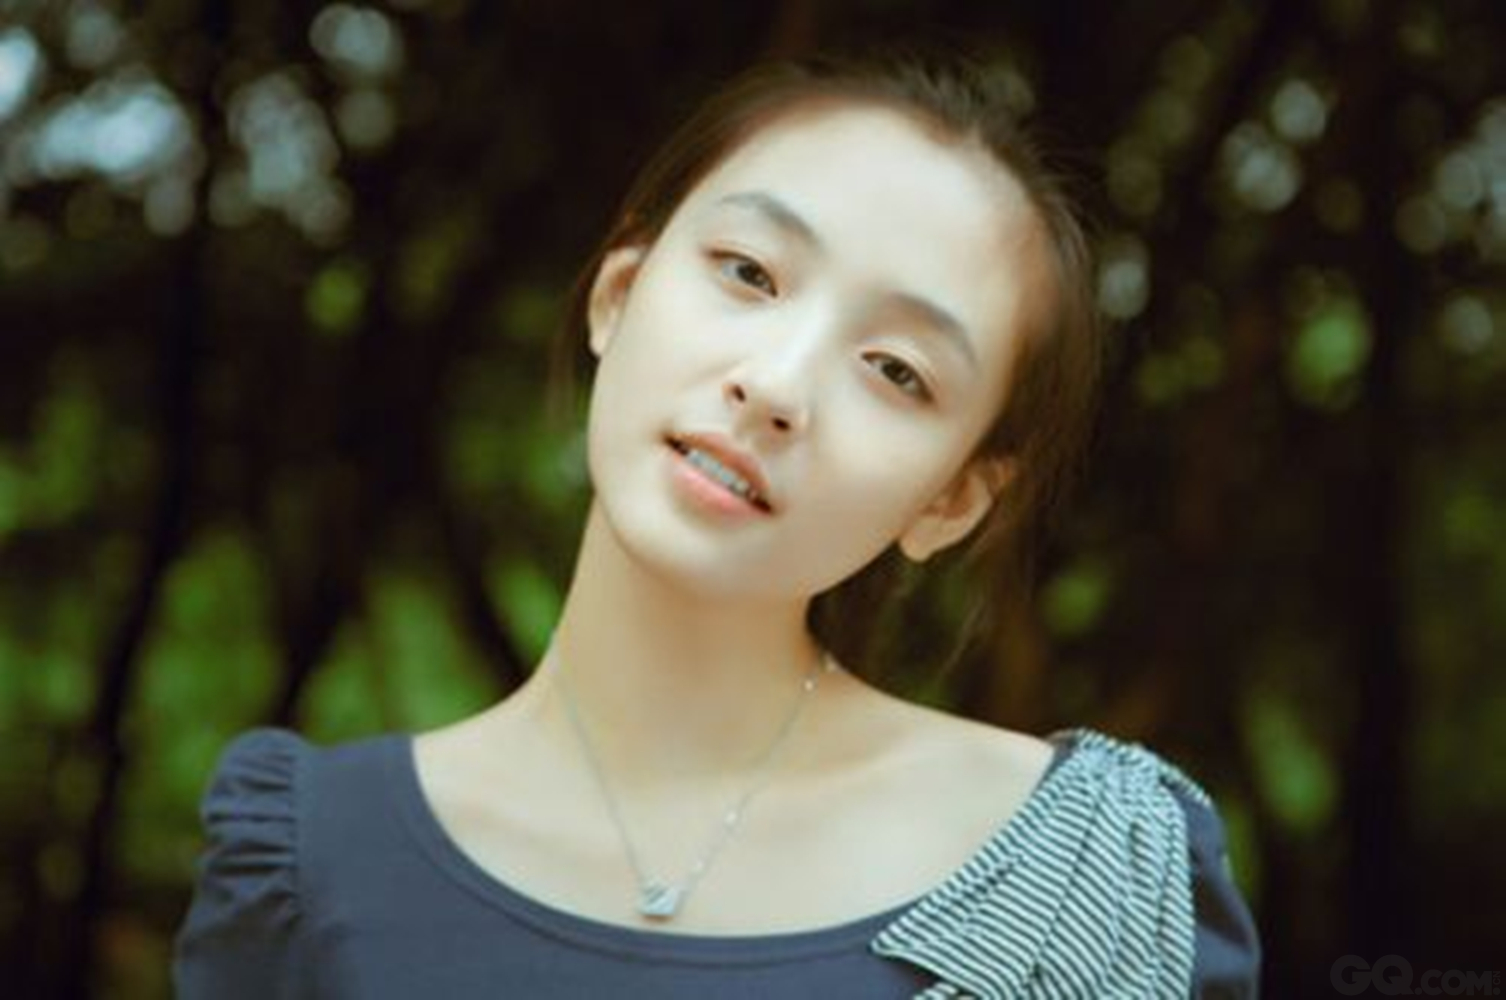 2012年，吴倩就读于武汉大学艺术学系，那时她就已经小范围网红，被称作“武大校花”。毕业后，吴倩签约影视公司，先后拍摄《鹿鼎记》、《何以笙箫默》等作品。因为将小赵默笙演绎得更符合原著，吴倩的演艺之路被很多人看好。